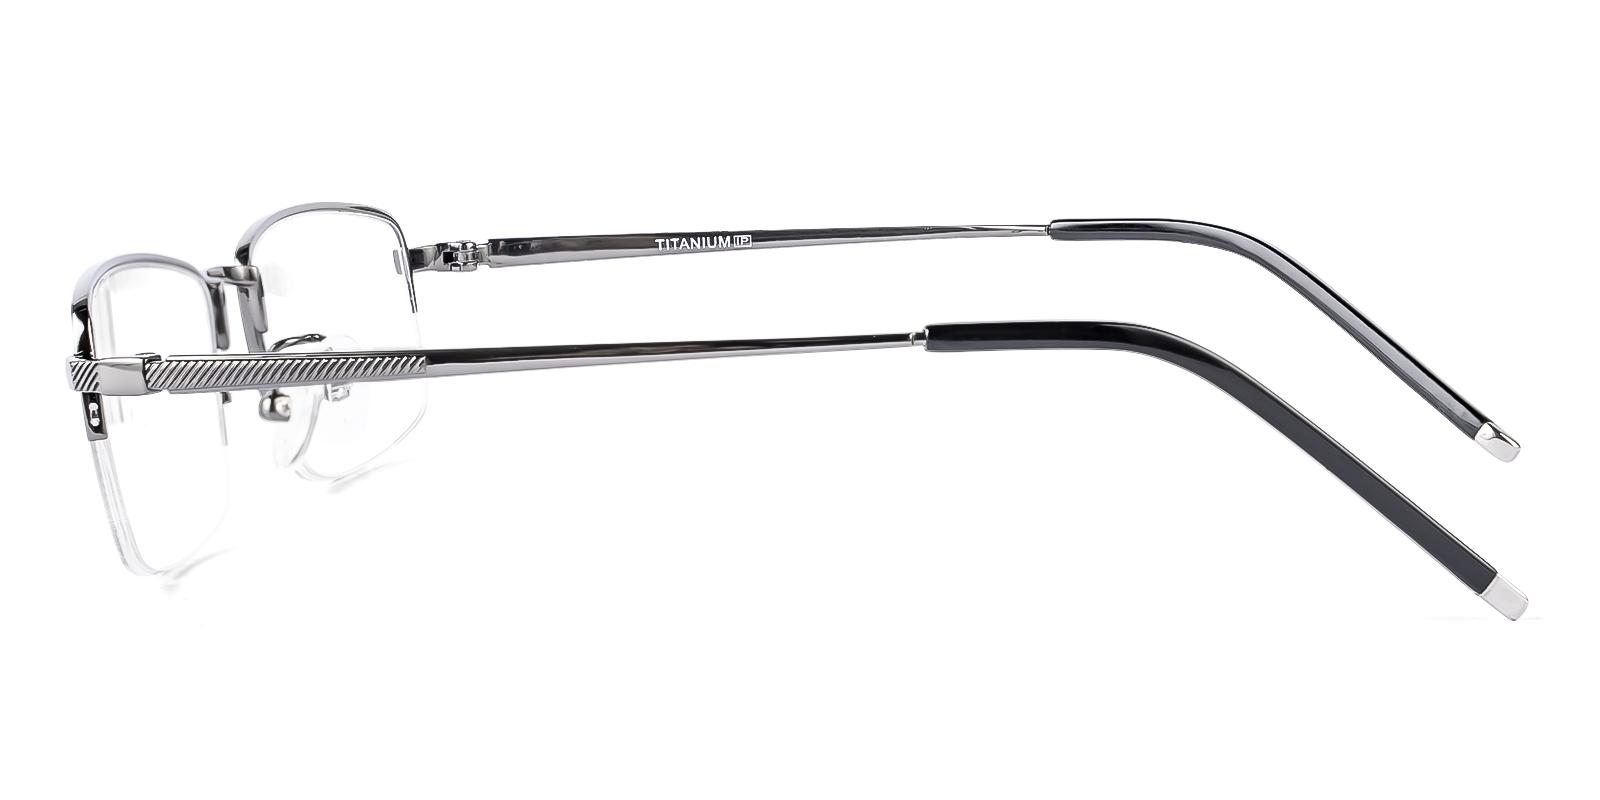 Alternier Gun Titanium Eyeglasses , NosePads Frames from ABBE Glasses